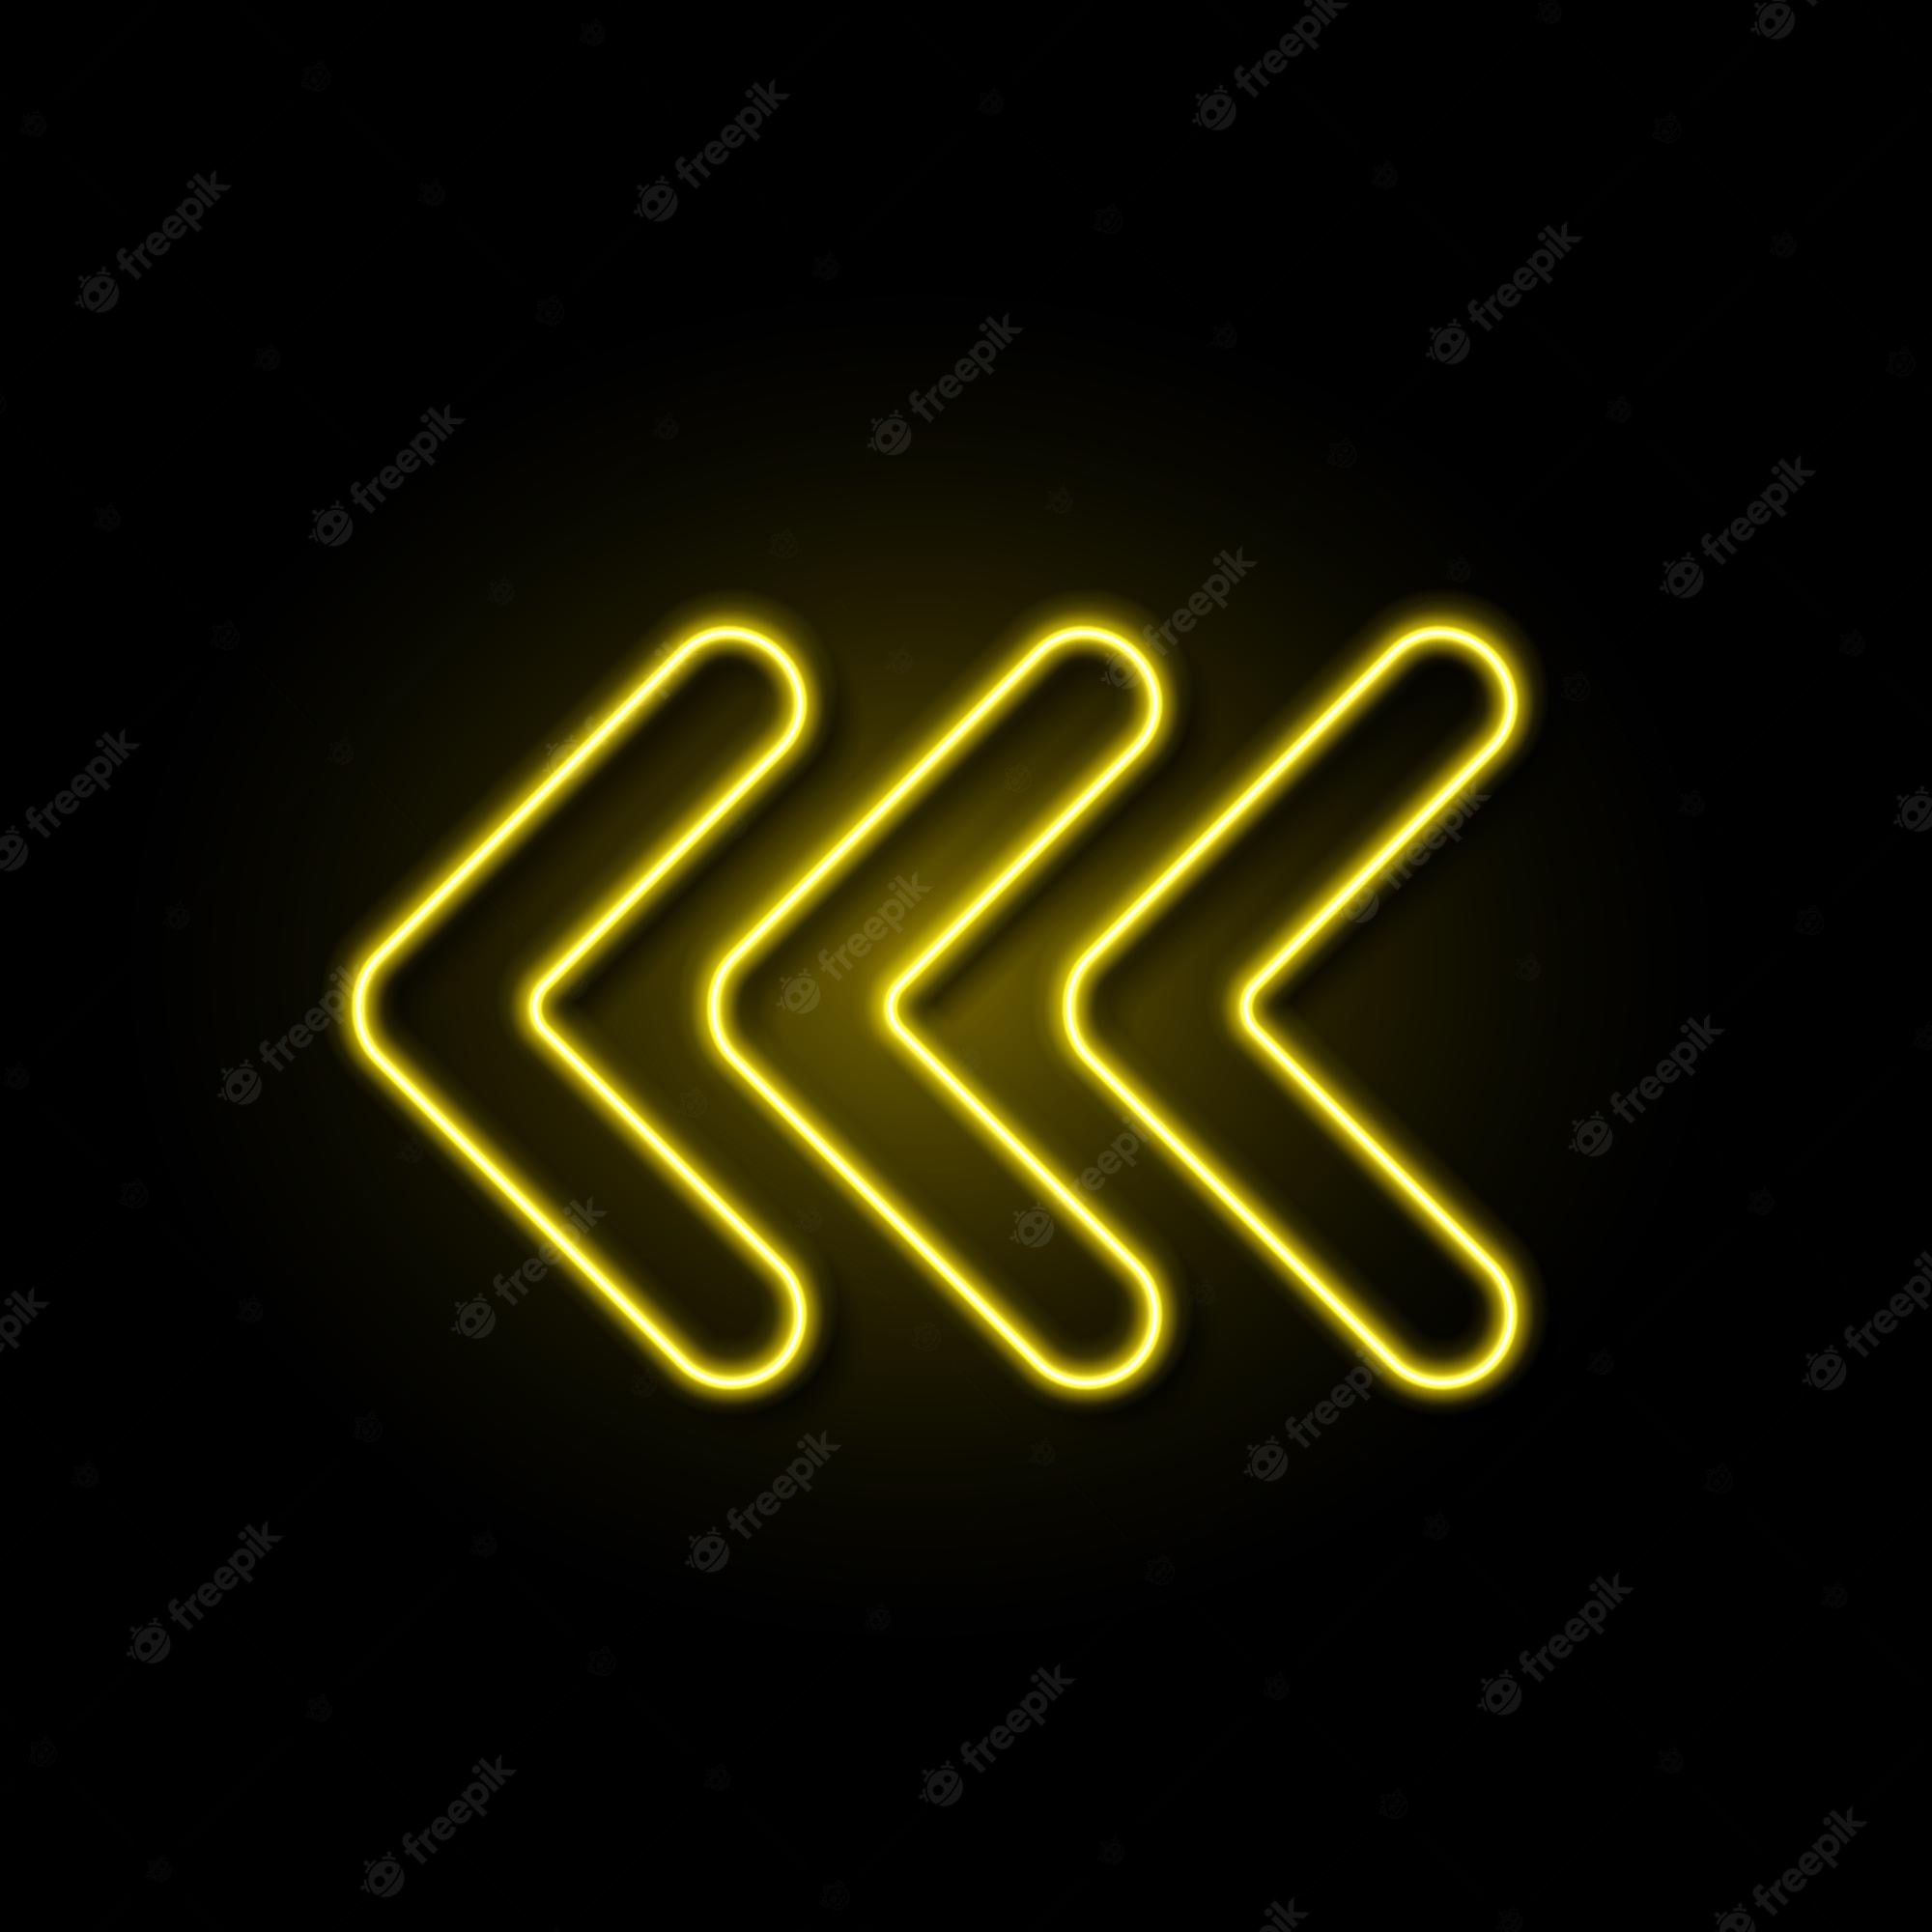 neonpfeil-realistisch-leuchtendes-gelbes-schild-abstraktes-stromfarbenes-schild-richtung-beleuchtetes-objekt-nachtclub-oder-partylampe-vektor-isoliert-auf-schwarzer-hintergrundillustration_176411-4078.jpg